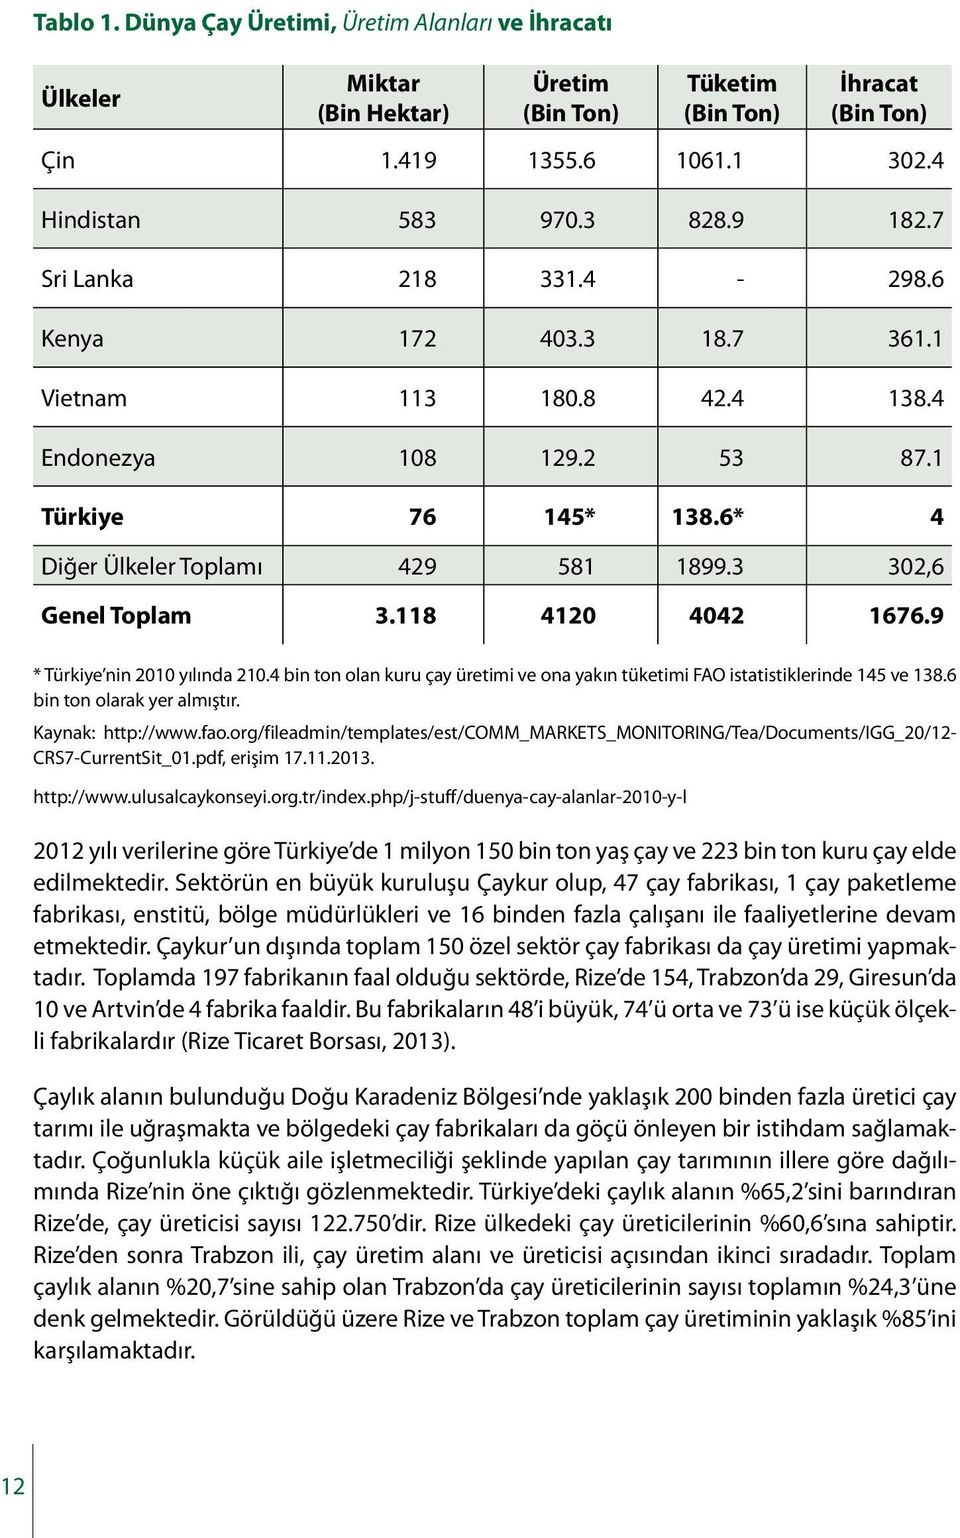 118 4120 4042 1676.9 * Türkiye nin 2010 yılında 210.4 bin ton olan kuru çay üretimi ve ona yakın tüketimi FAO istatistiklerinde 145 ve 138.6 bin ton olarak yer almıştır. Kaynak: http://www.fao.